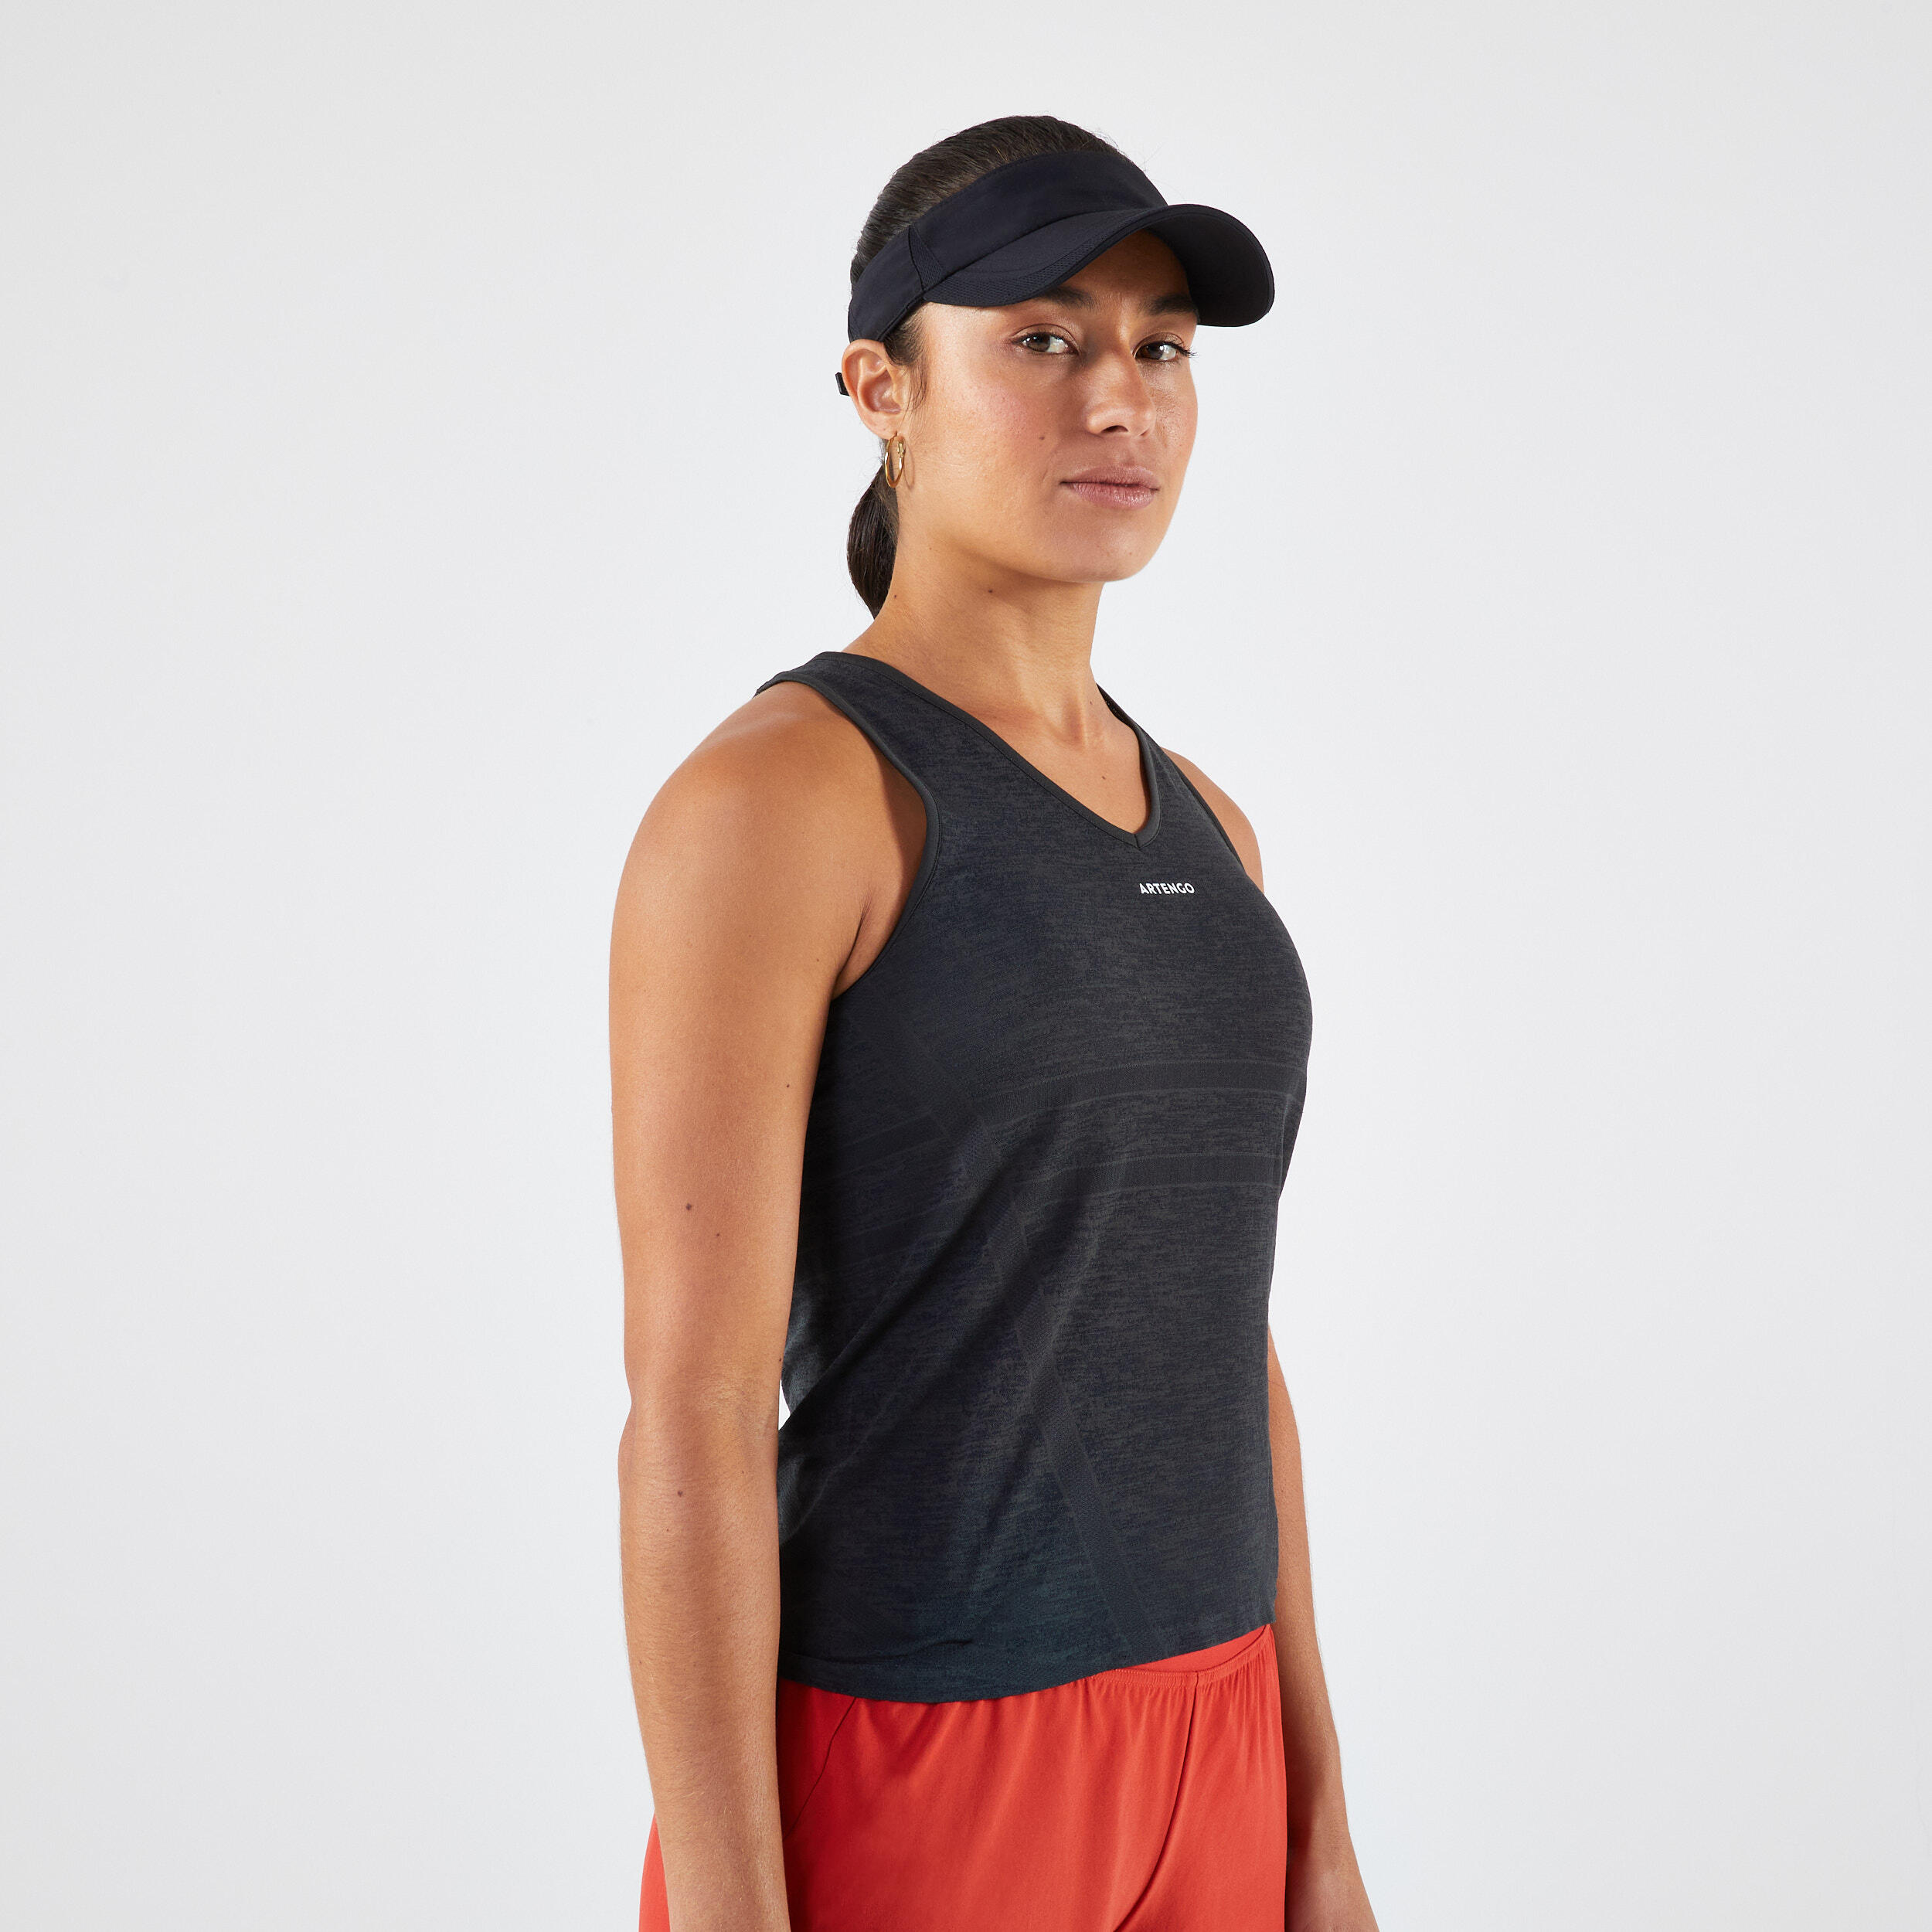 ARTENGO Women's Lightweight Tennis Tank Top TTK Light - Carbon Grey